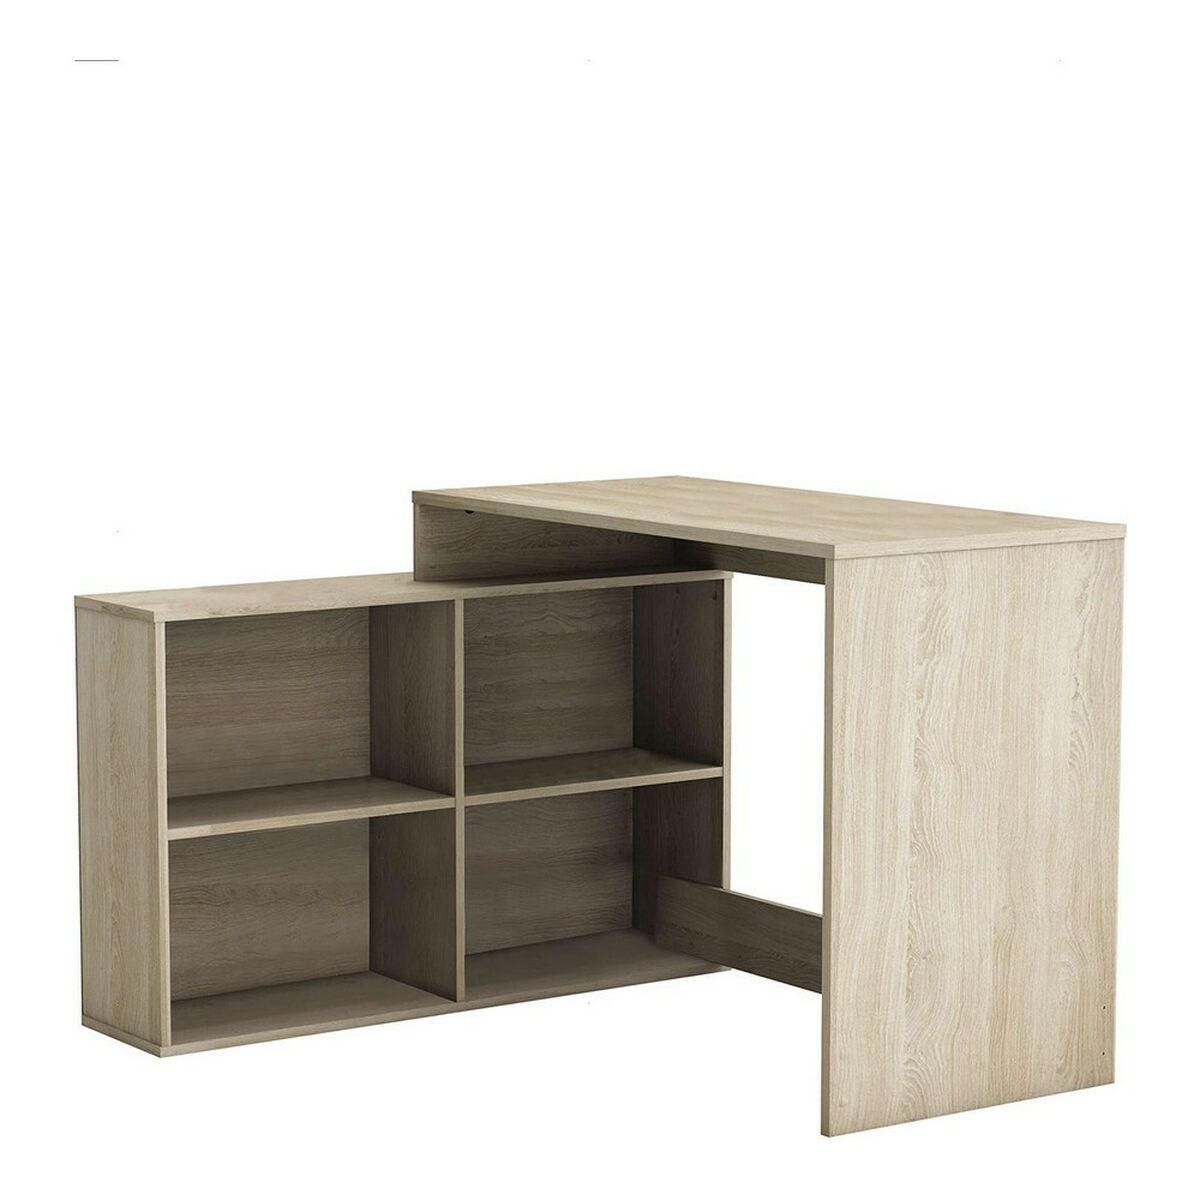 Schreibtisch Demeyere Nagano Holz Eg 112 x 101 x 77 cm 24 x 101 x 63 cm 